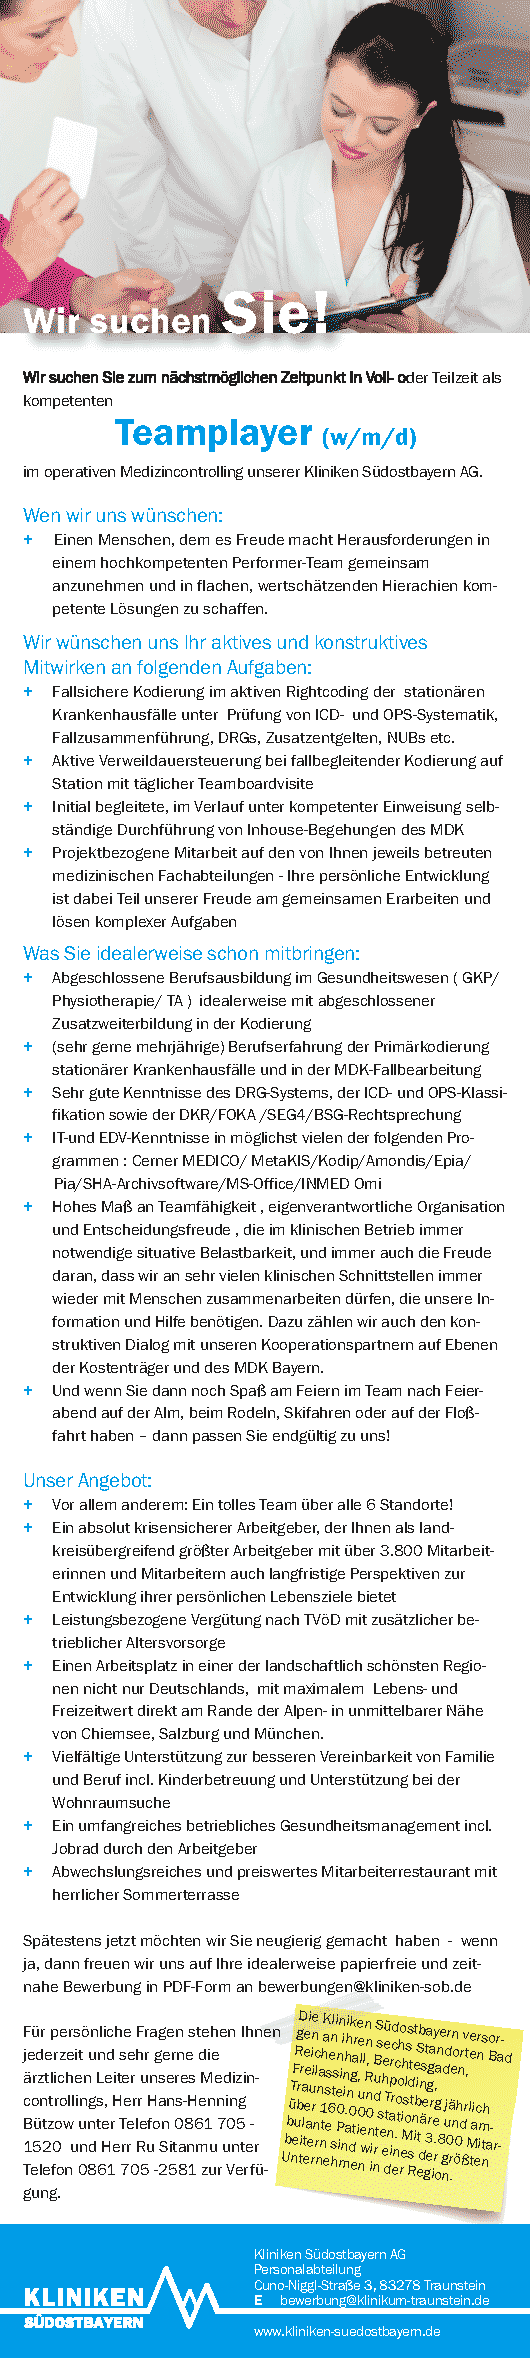 Kliniken Südostbayern AG Traunstein: Teamplayer im operativen Medizincontrolling (w/m/d)